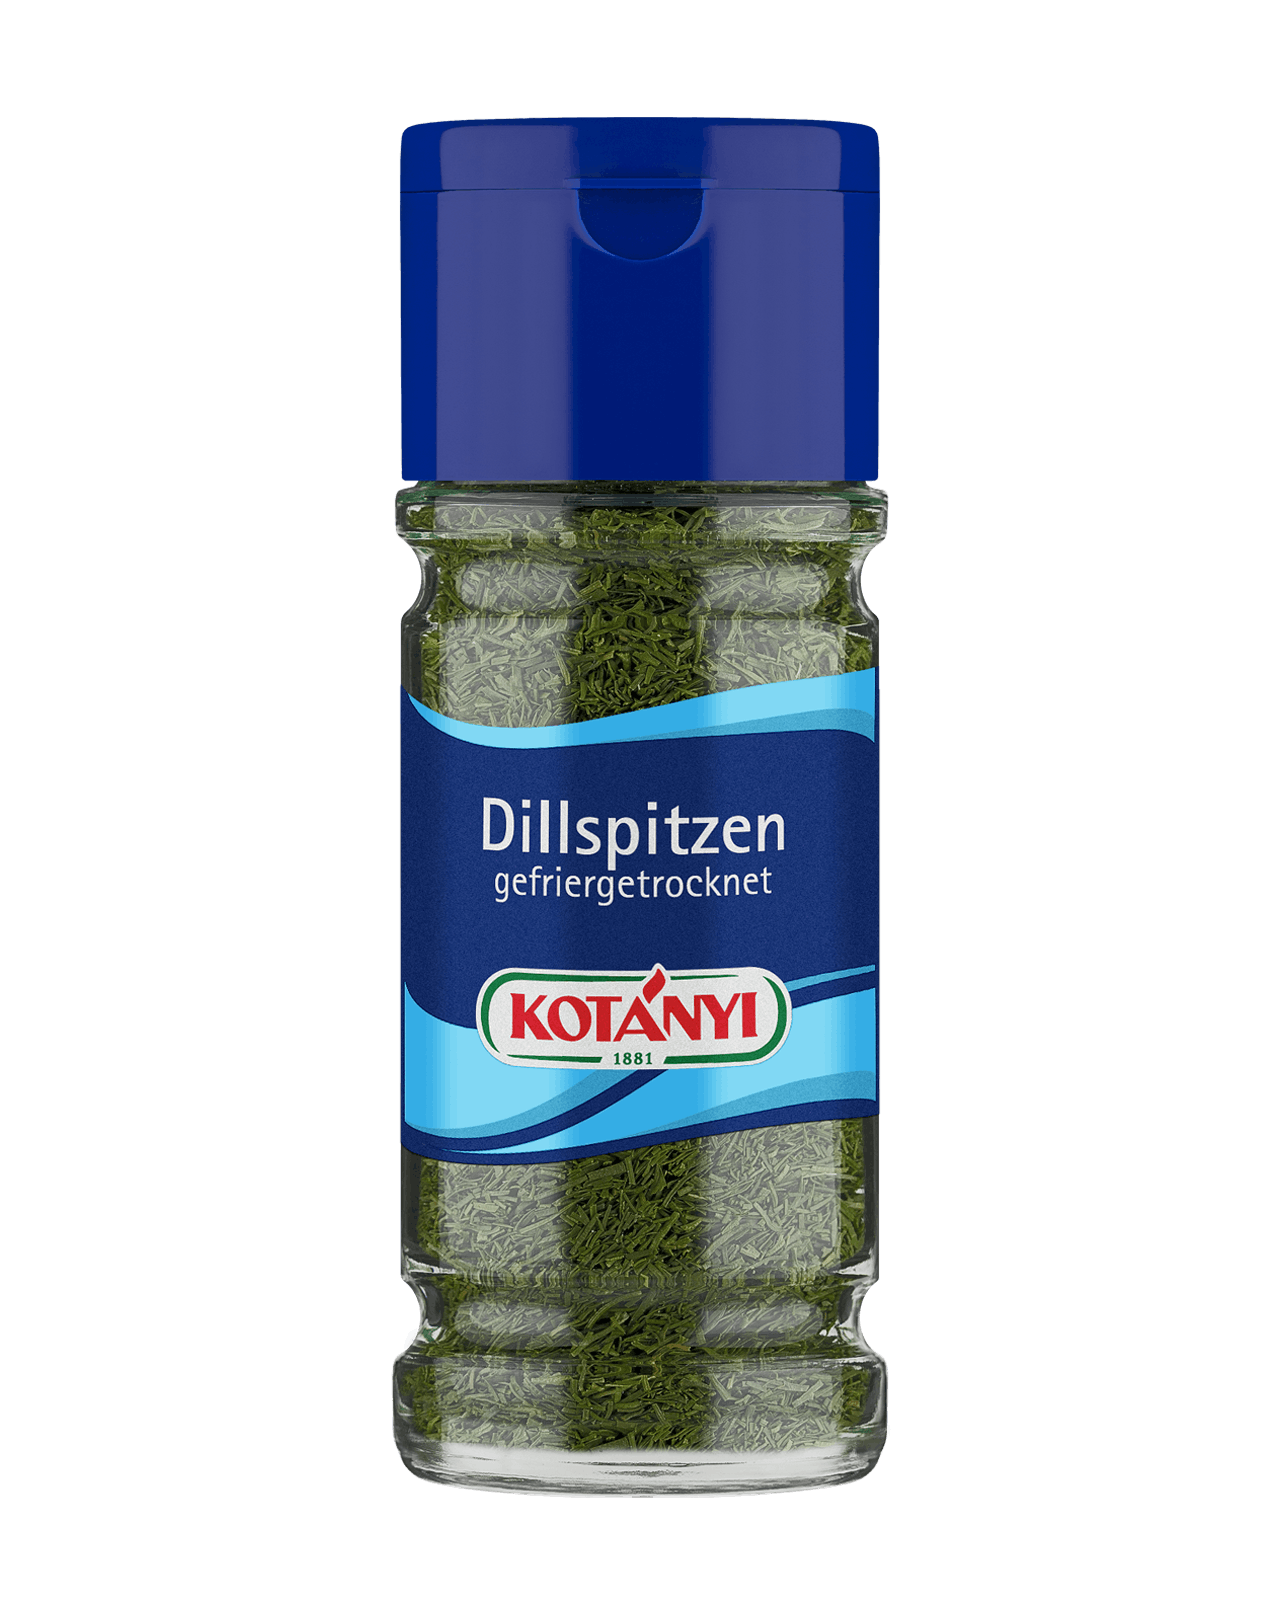 5732016 Dillspitzen Gefriergetrocknet Glas Kotanyi